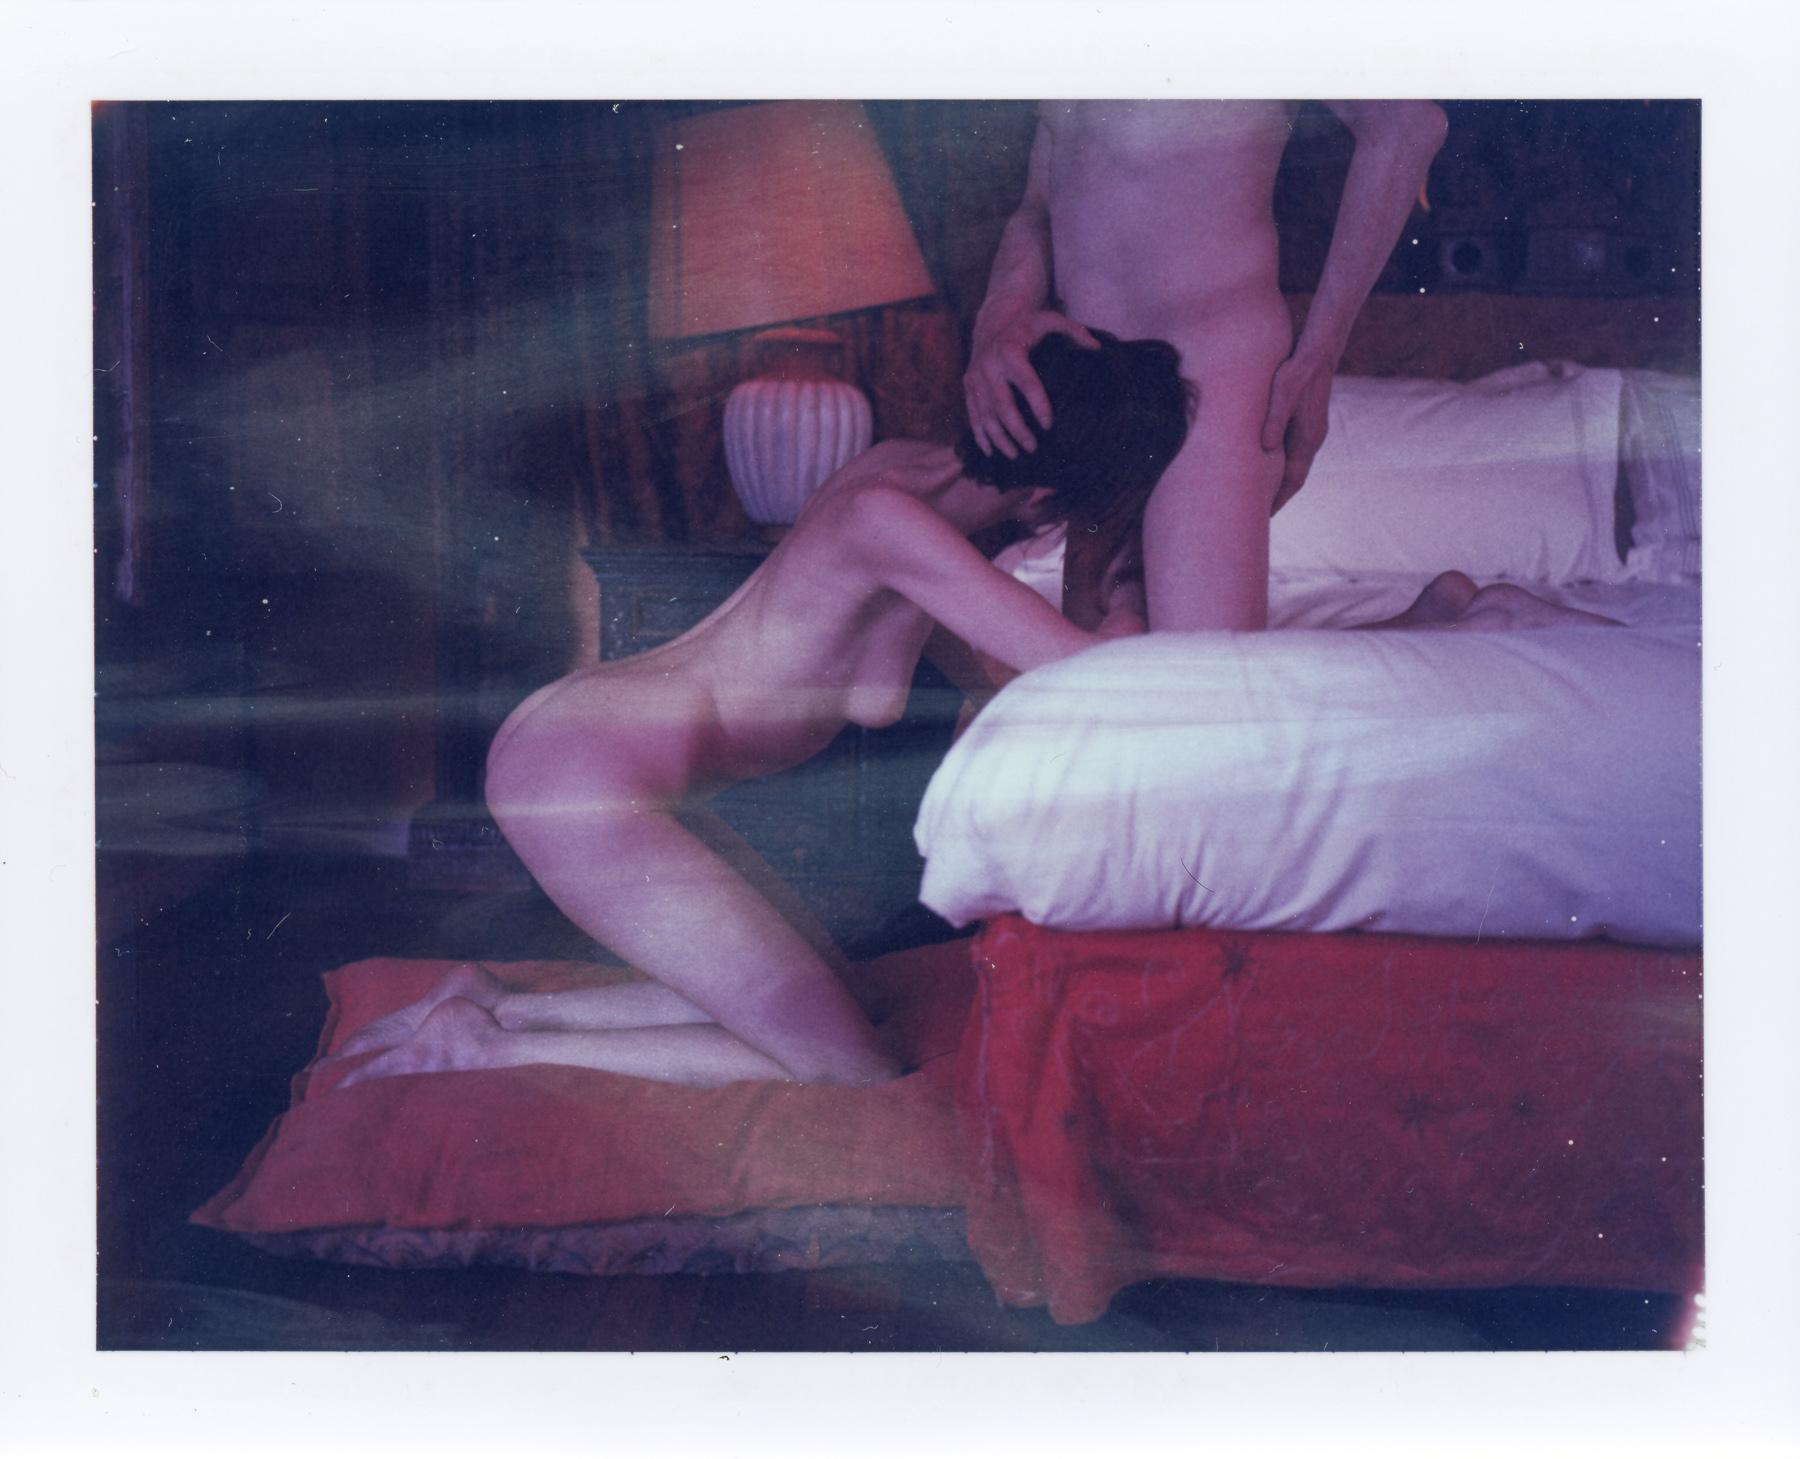 La fin de la réception - 21e siècle, Polaroid, photographie de nus